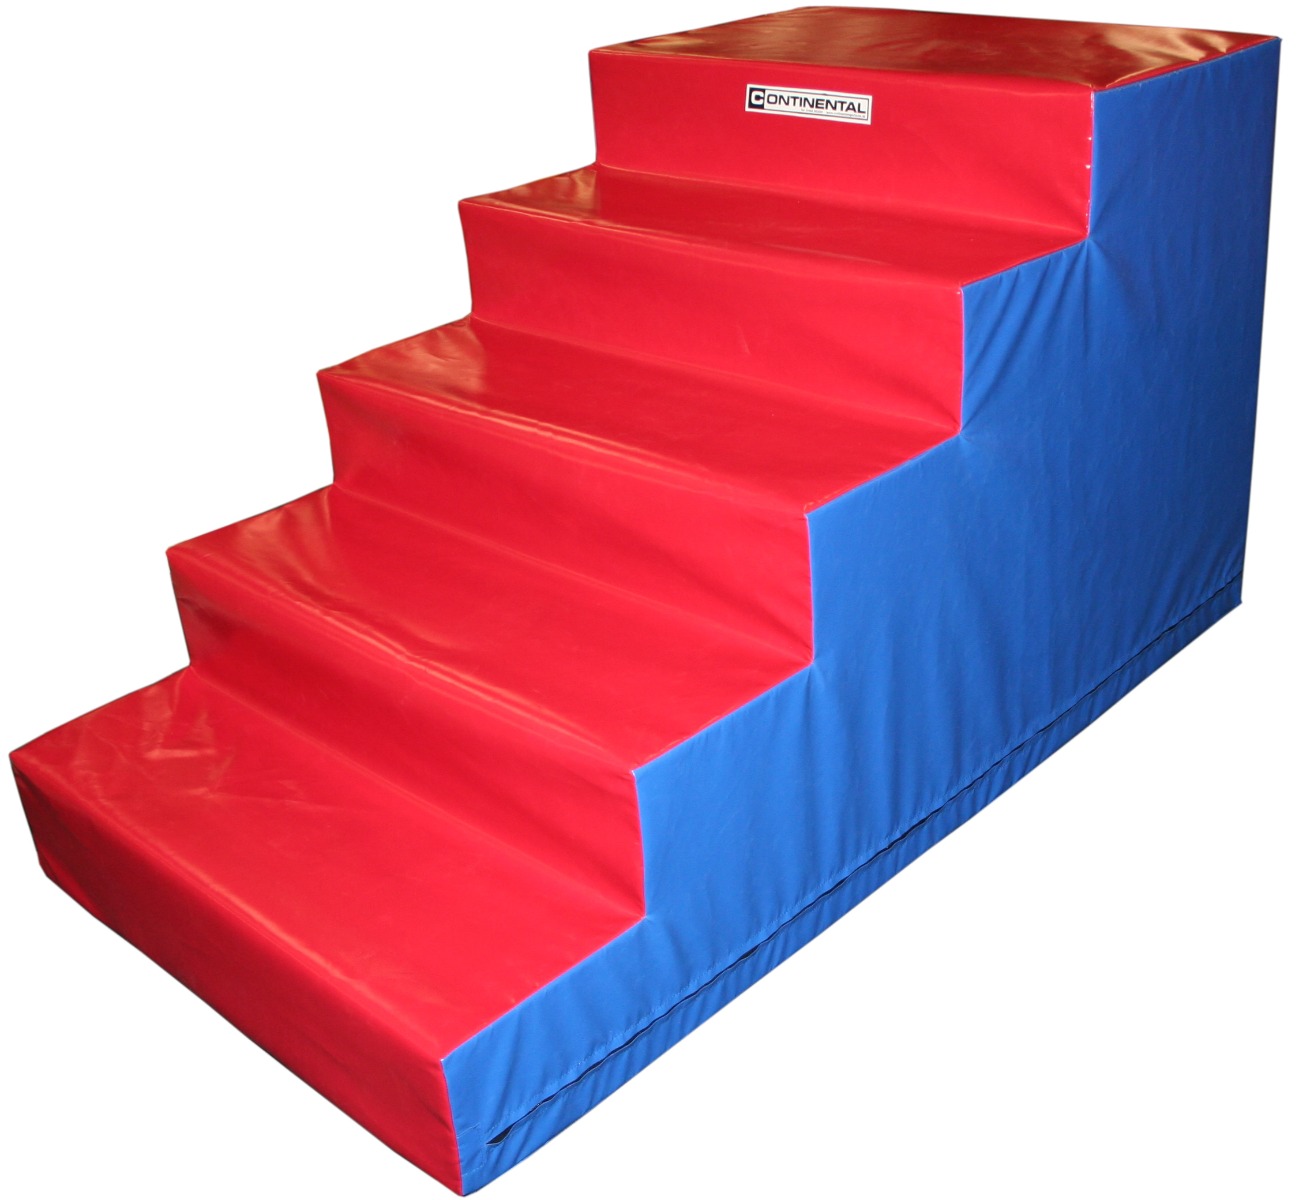 Trampoline foam access steps